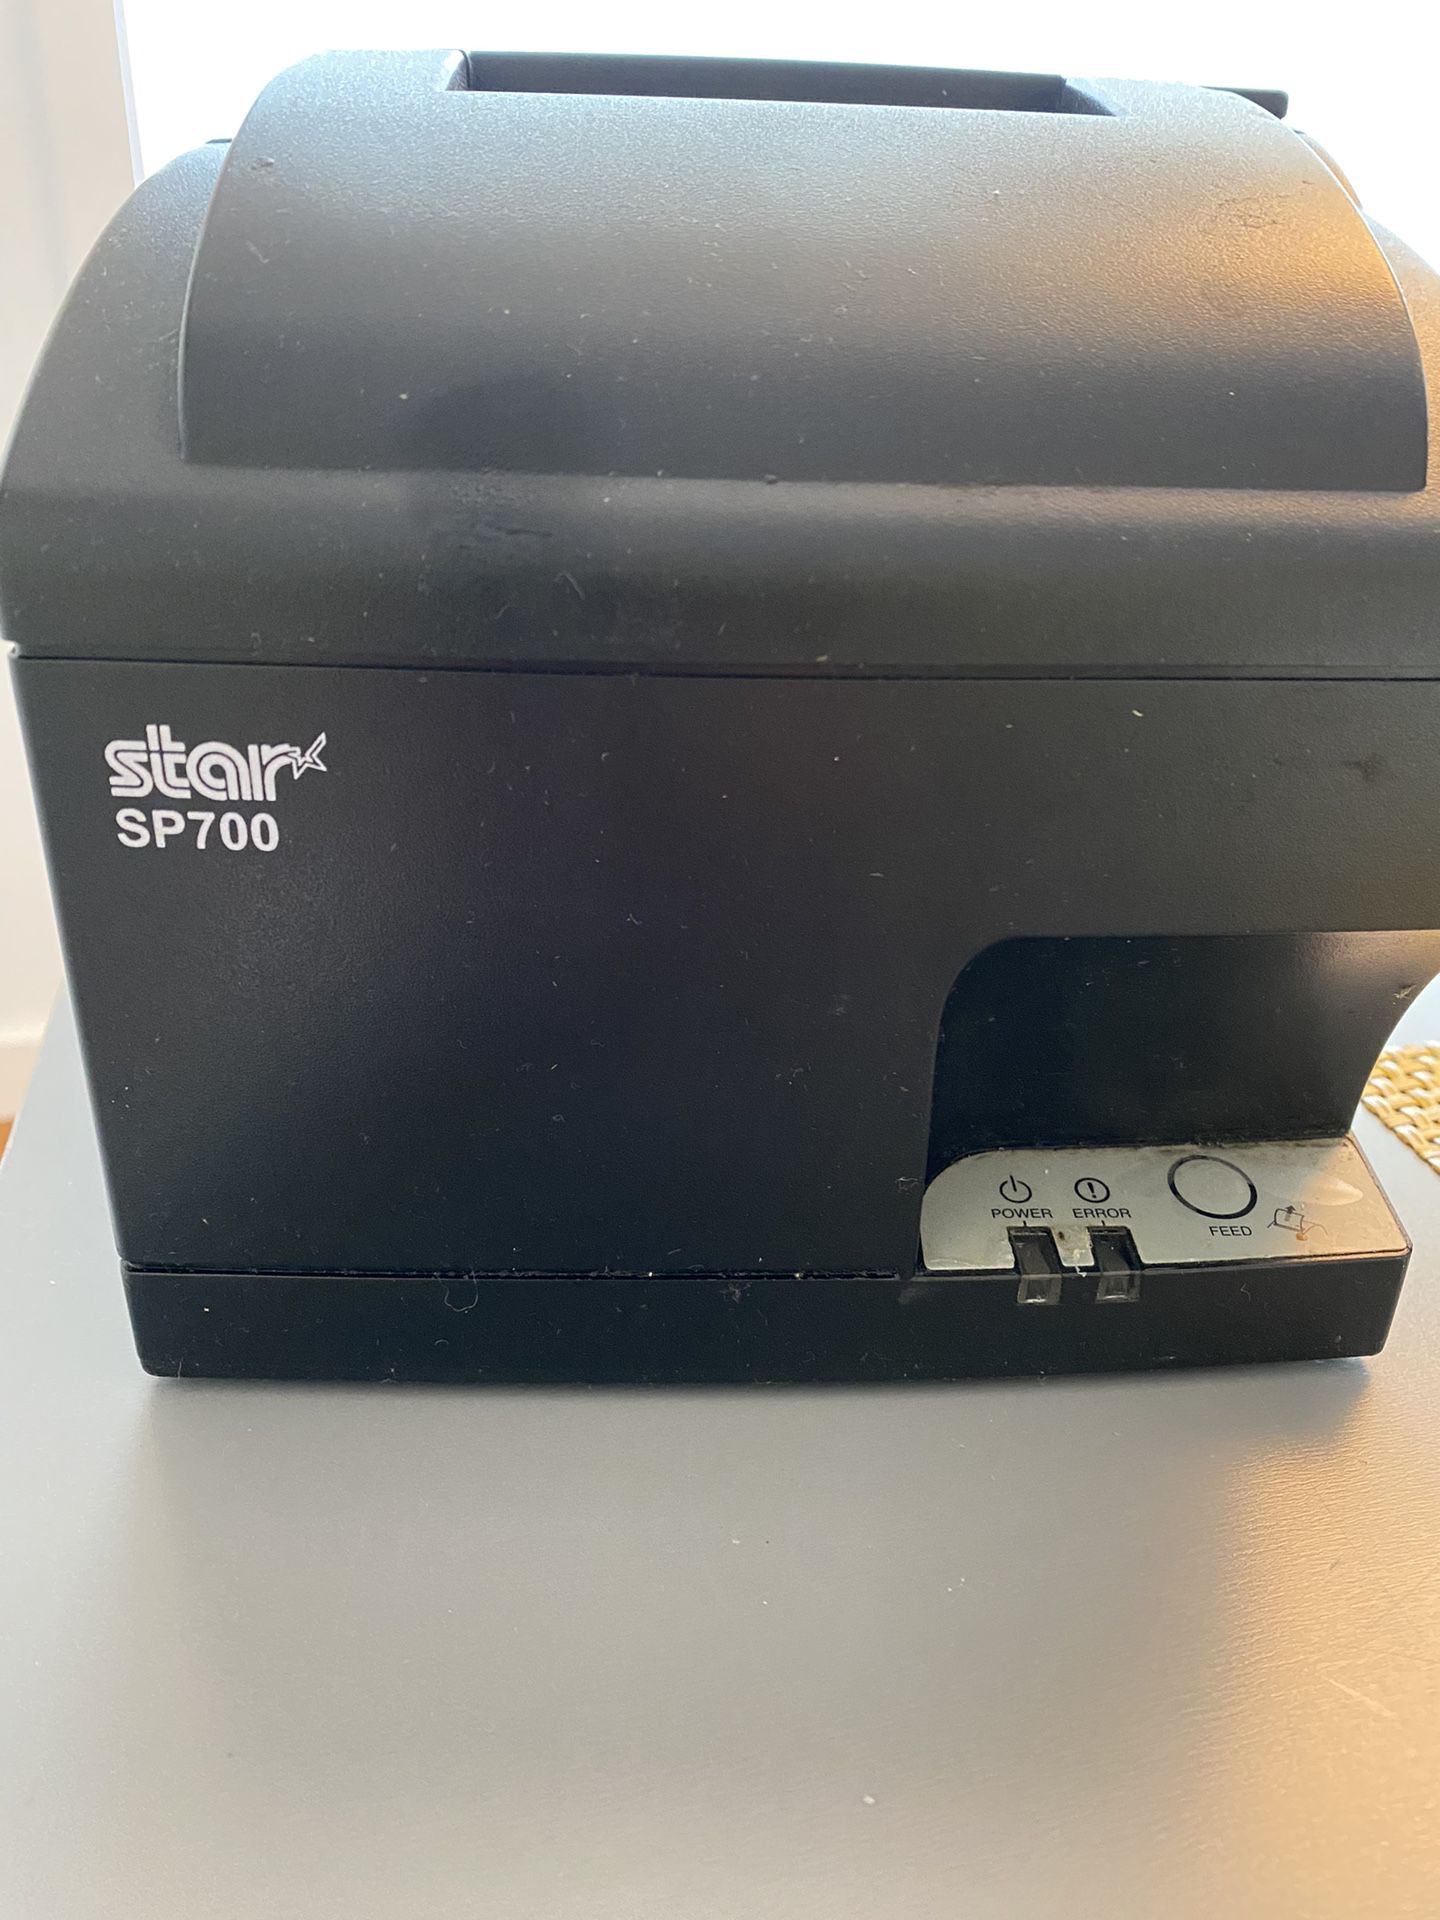 Star sp700 Kitchen Printer